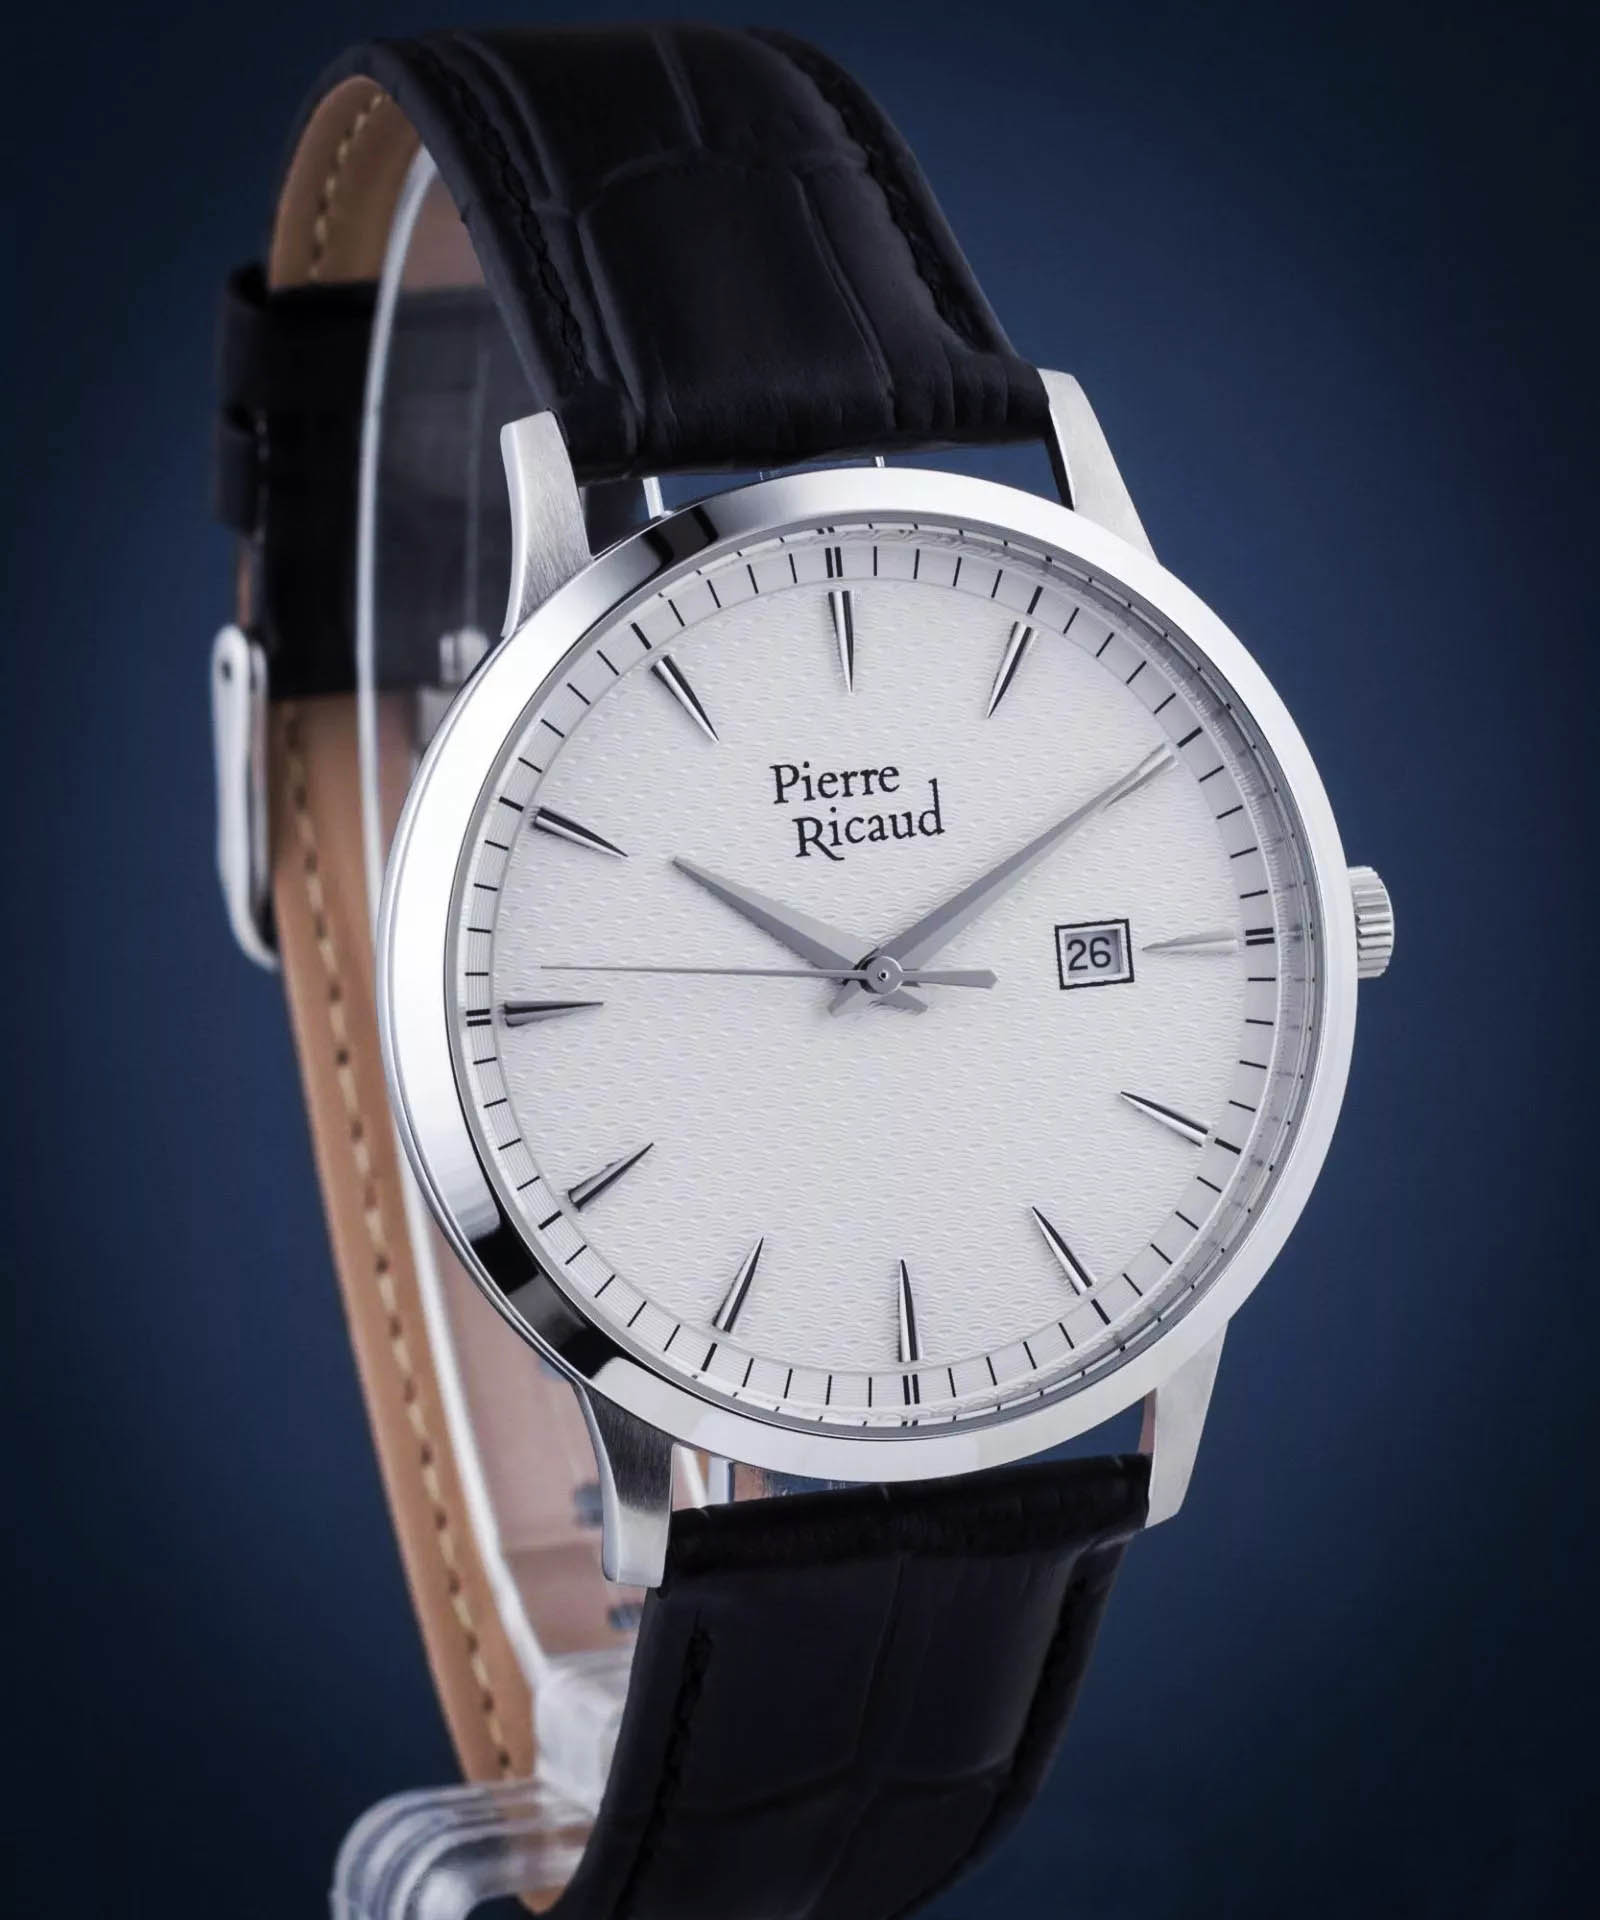 ساعت مچی مردانه پیر ریکد Pierre Ricaud اورجینال مدل P91023.5212Q